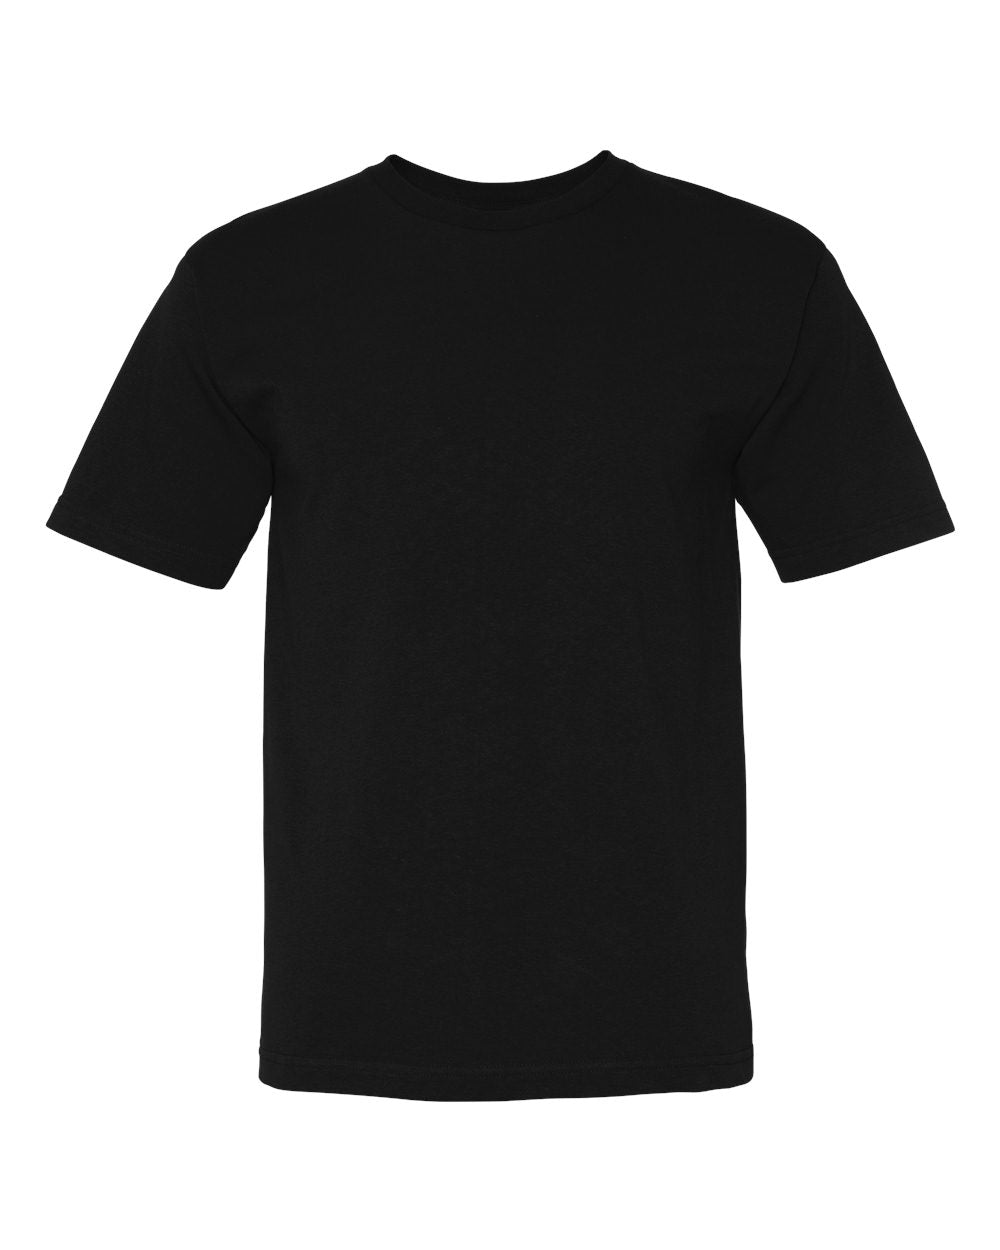 Blind Trust Premium Black T-Shirt